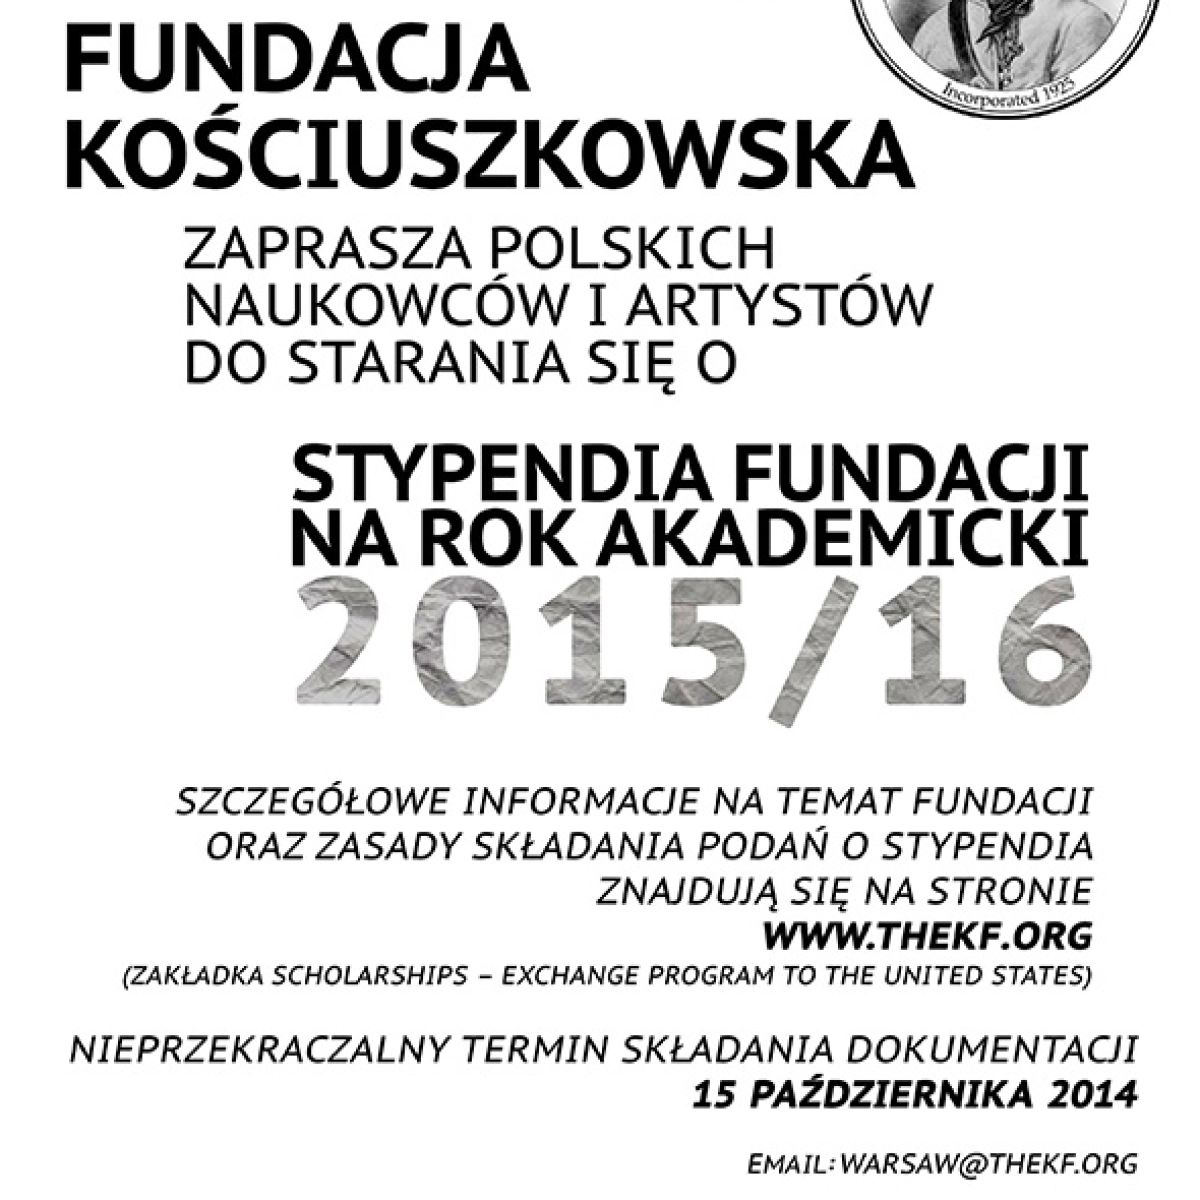 Stypendia Fundacji Kościuszkowskiej na rok 2015/2016 dla naukowców i artystów